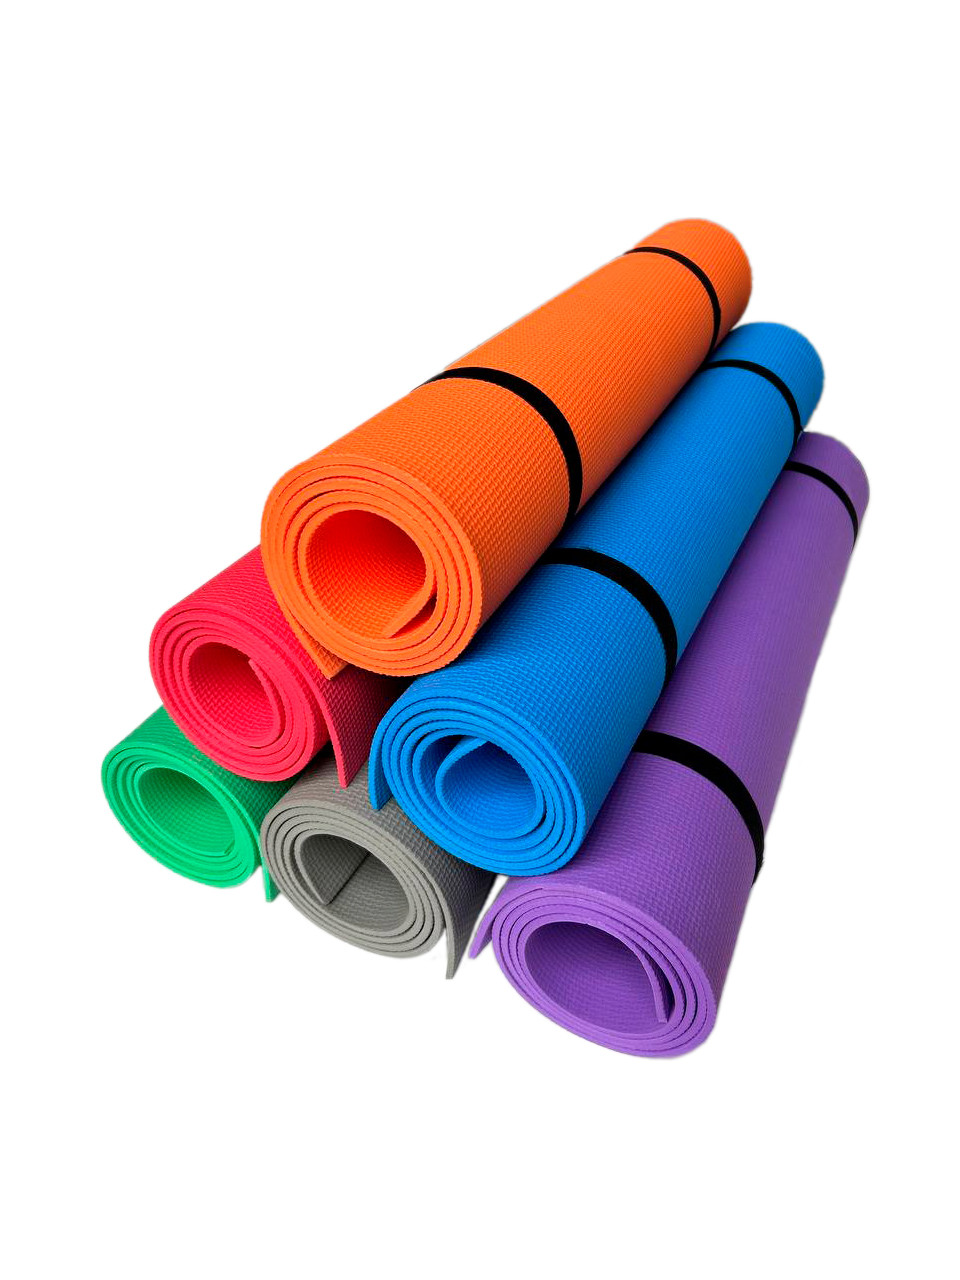 Килимок спортивний для йоги Eva-Yoga 1450х500х5 мм. Щільність 100 кг/м3 (міцний)